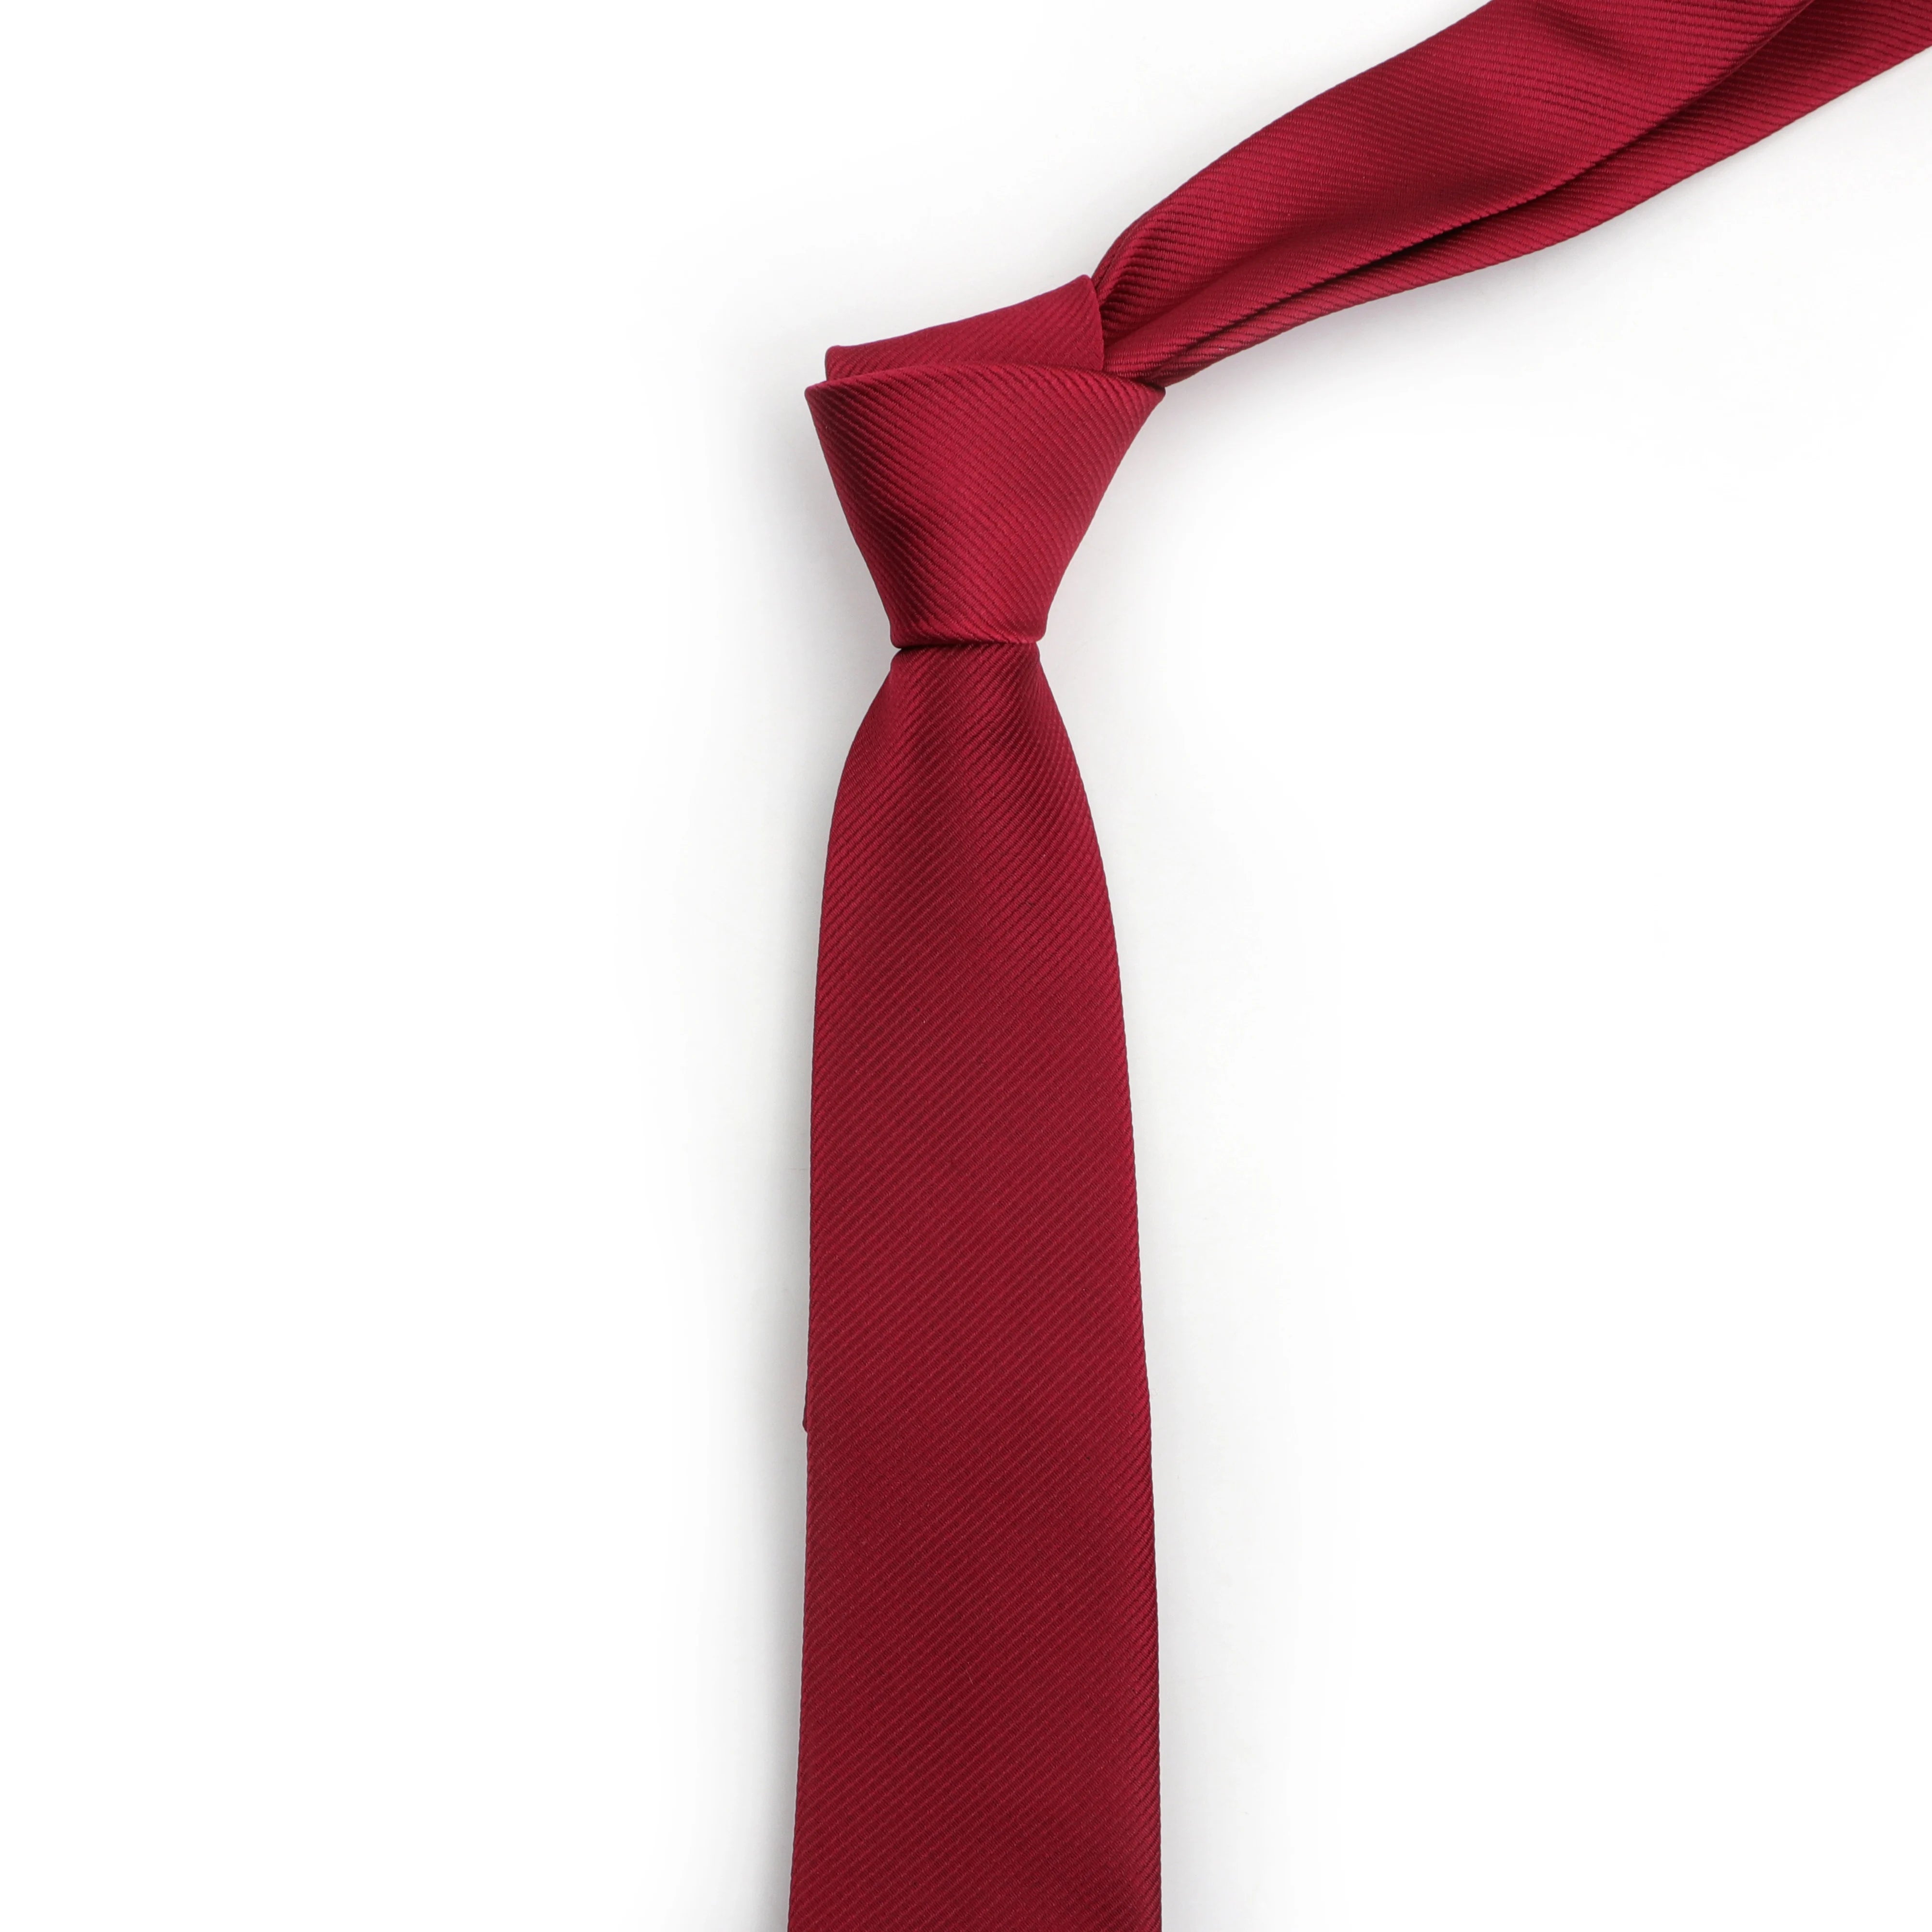 Men Solid Classic Ties Formal Striped Business 6Cm Slim Necktie For Wedding Tie Skinny Groom Cravat